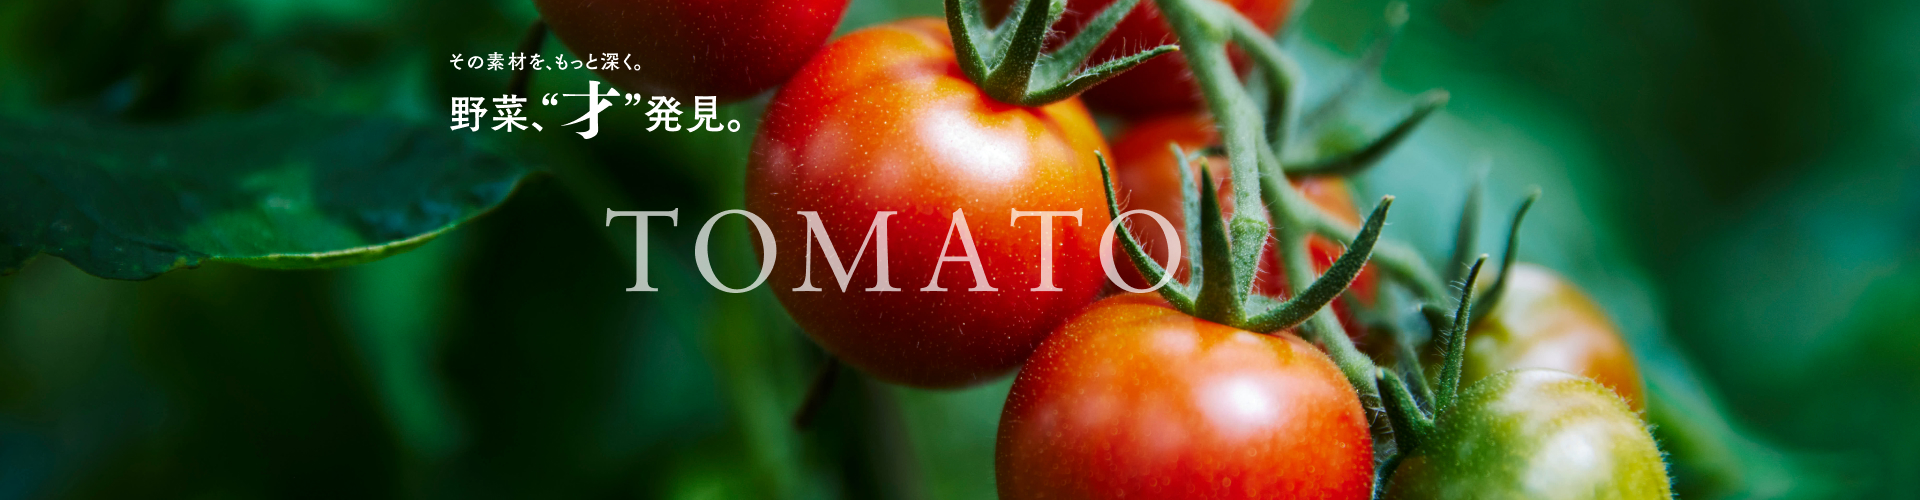 野菜、“才” 発見。Vol.1 トマト